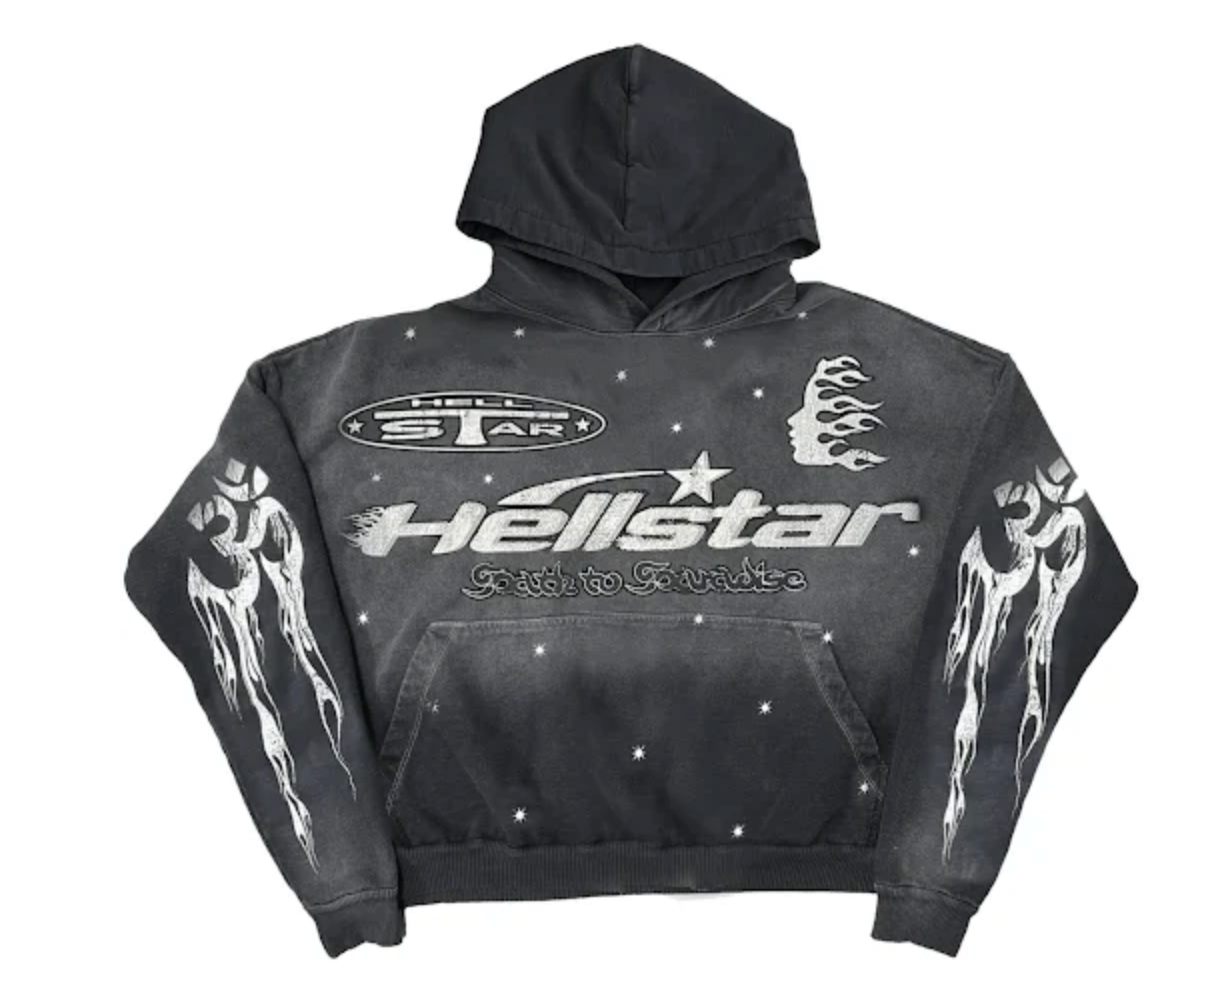 Hellstar Racer Hoodie Black